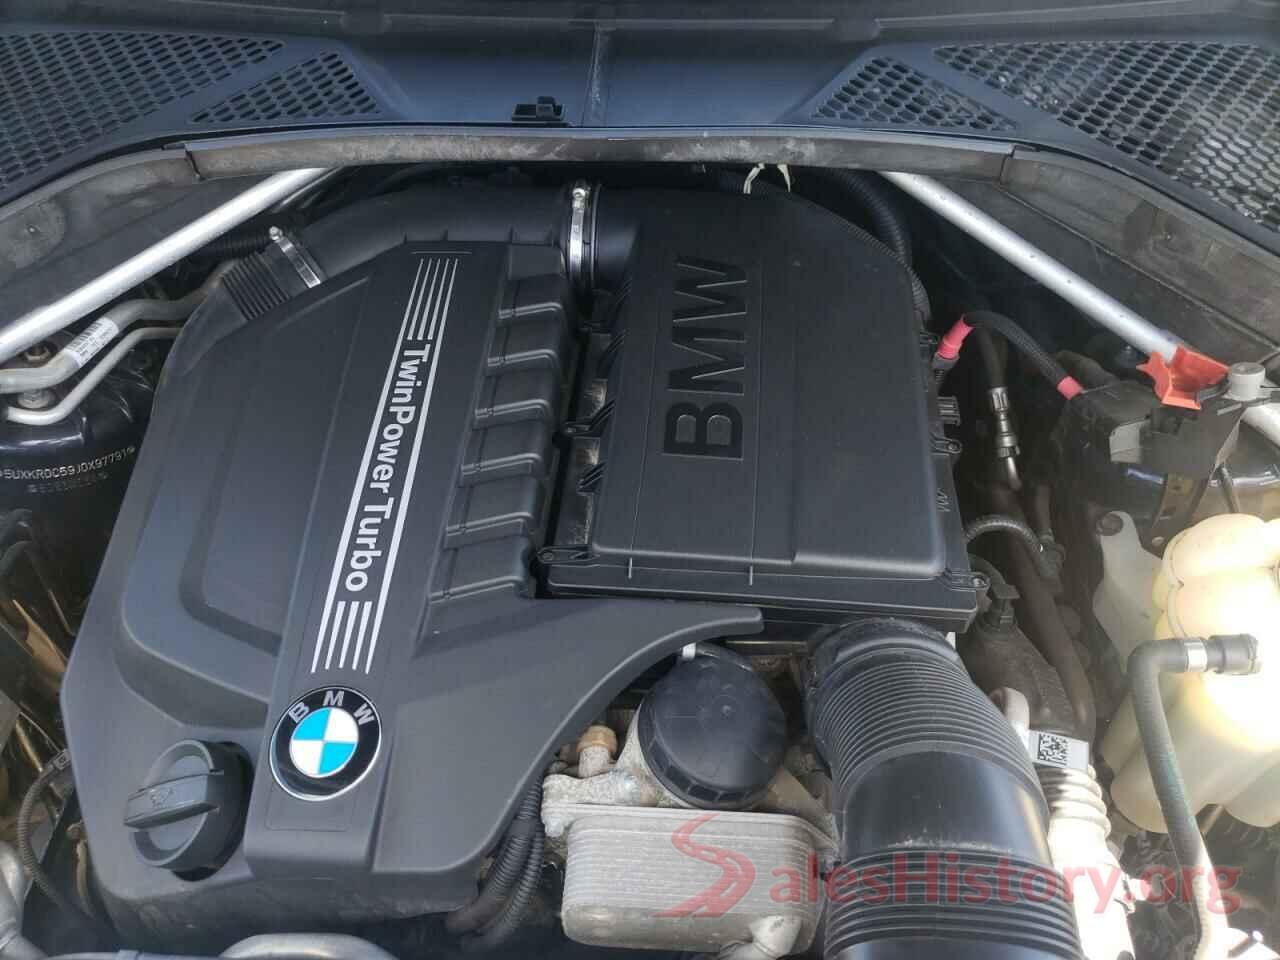 5UXKR0C59J0X97791 2018 BMW X5